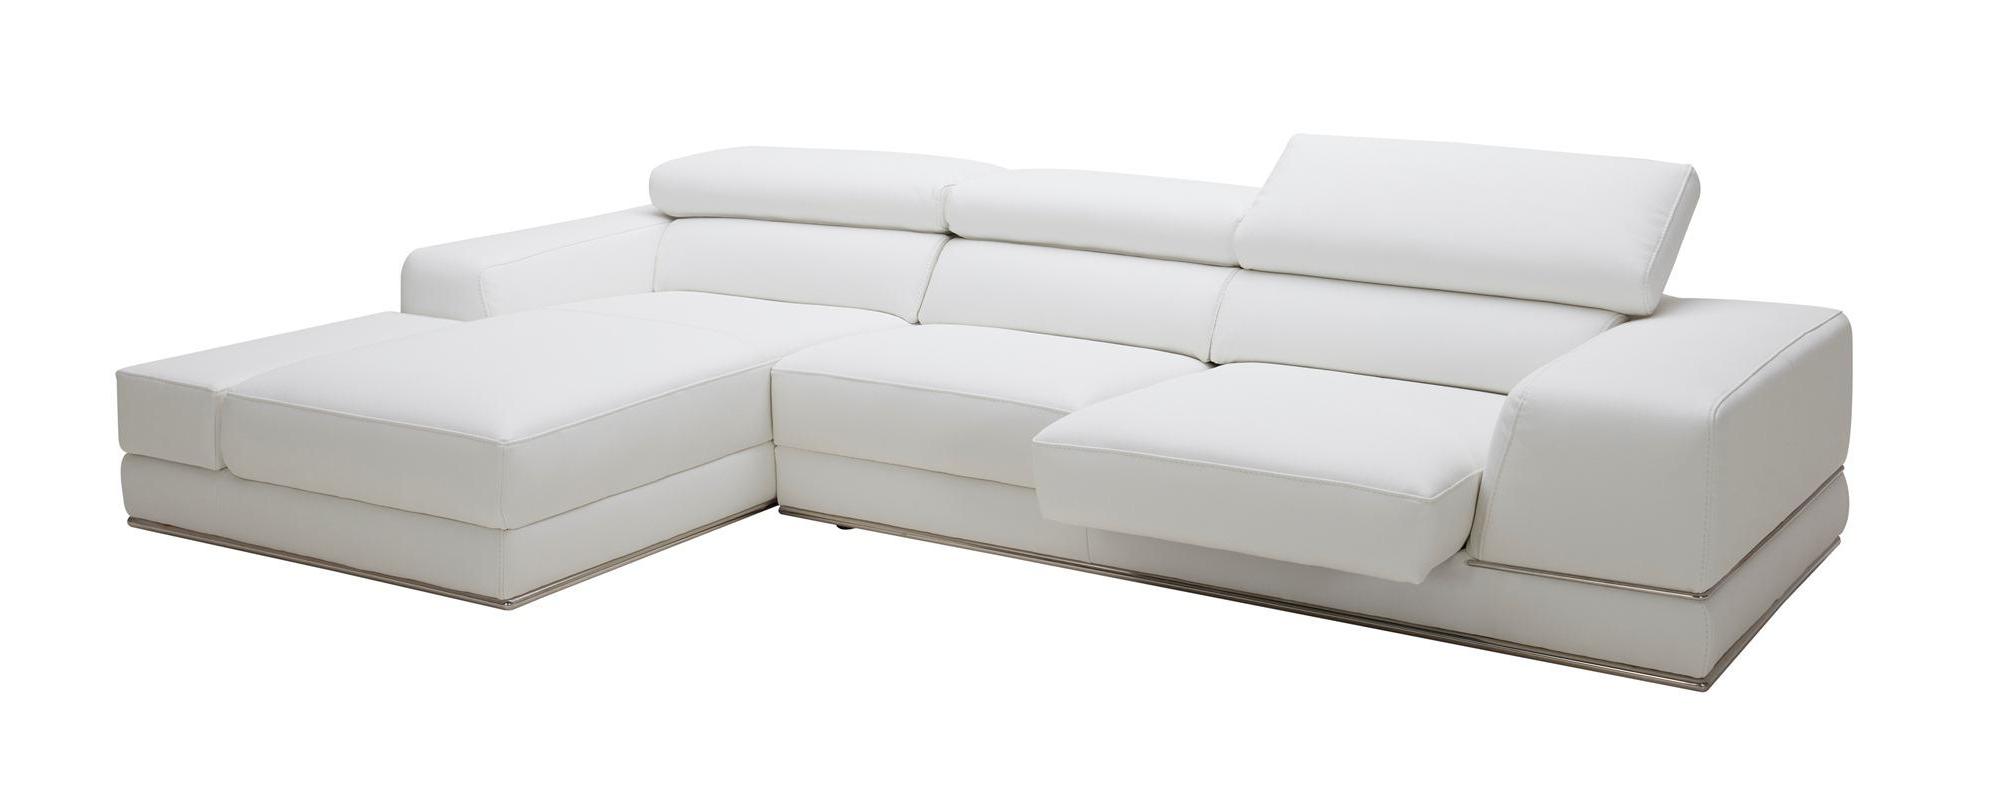 

    
VIG Furniture Divani Casa Chrysanthemum Mini Sectional Sofa White VGKK1576-MINI-WHT-LAF
